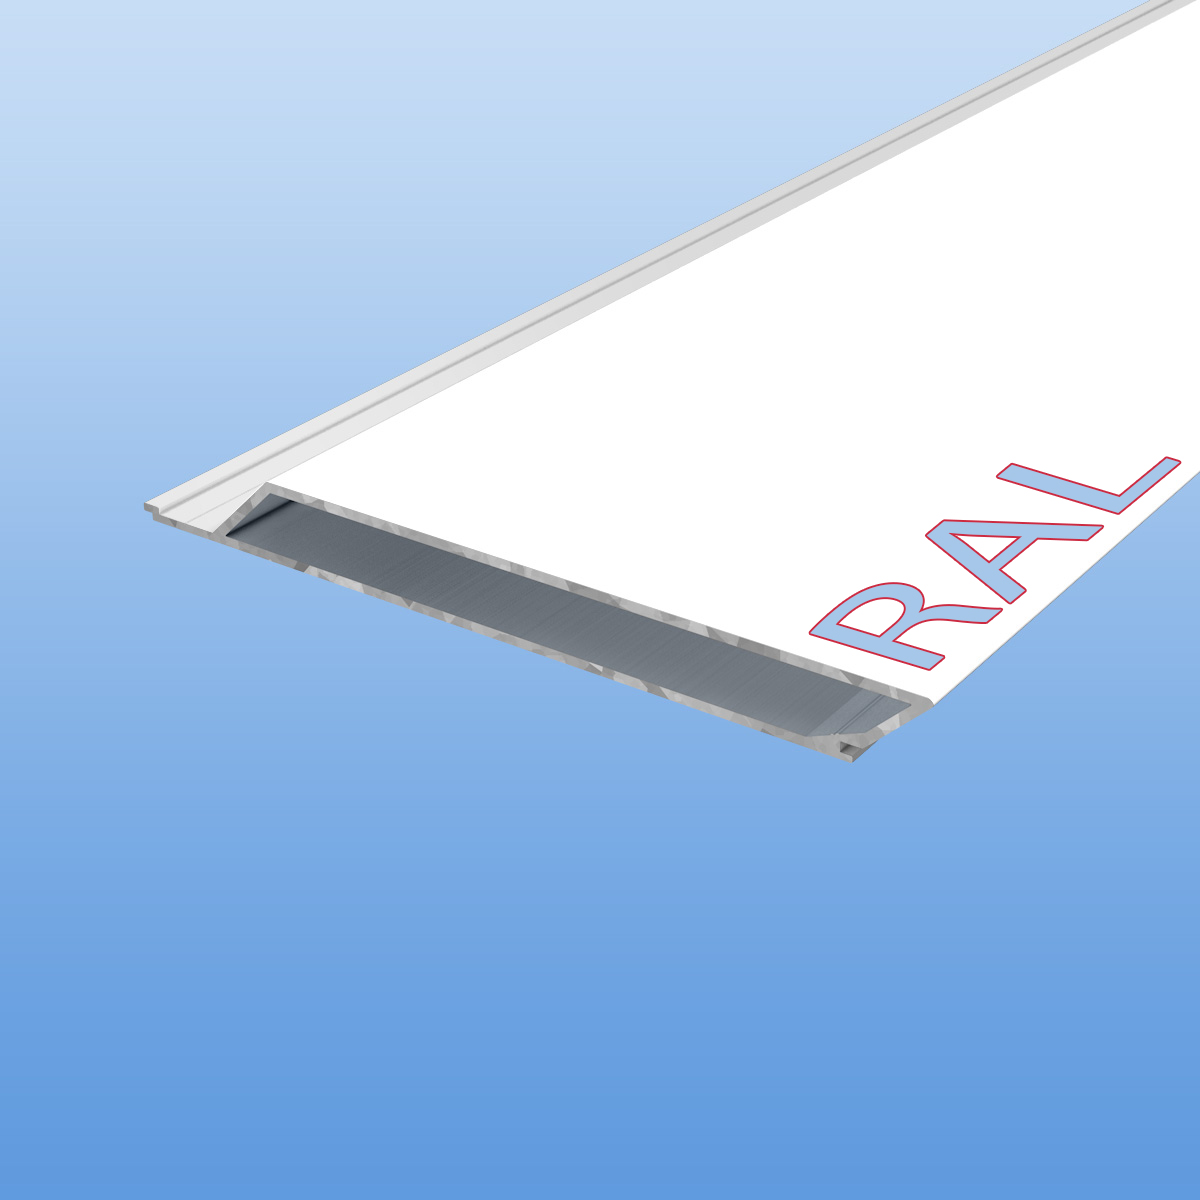 Rhombusprofil aus Aluminium 16mm mit Montagesteg nach RAL - Grautöne - Sichtfläche 134mm